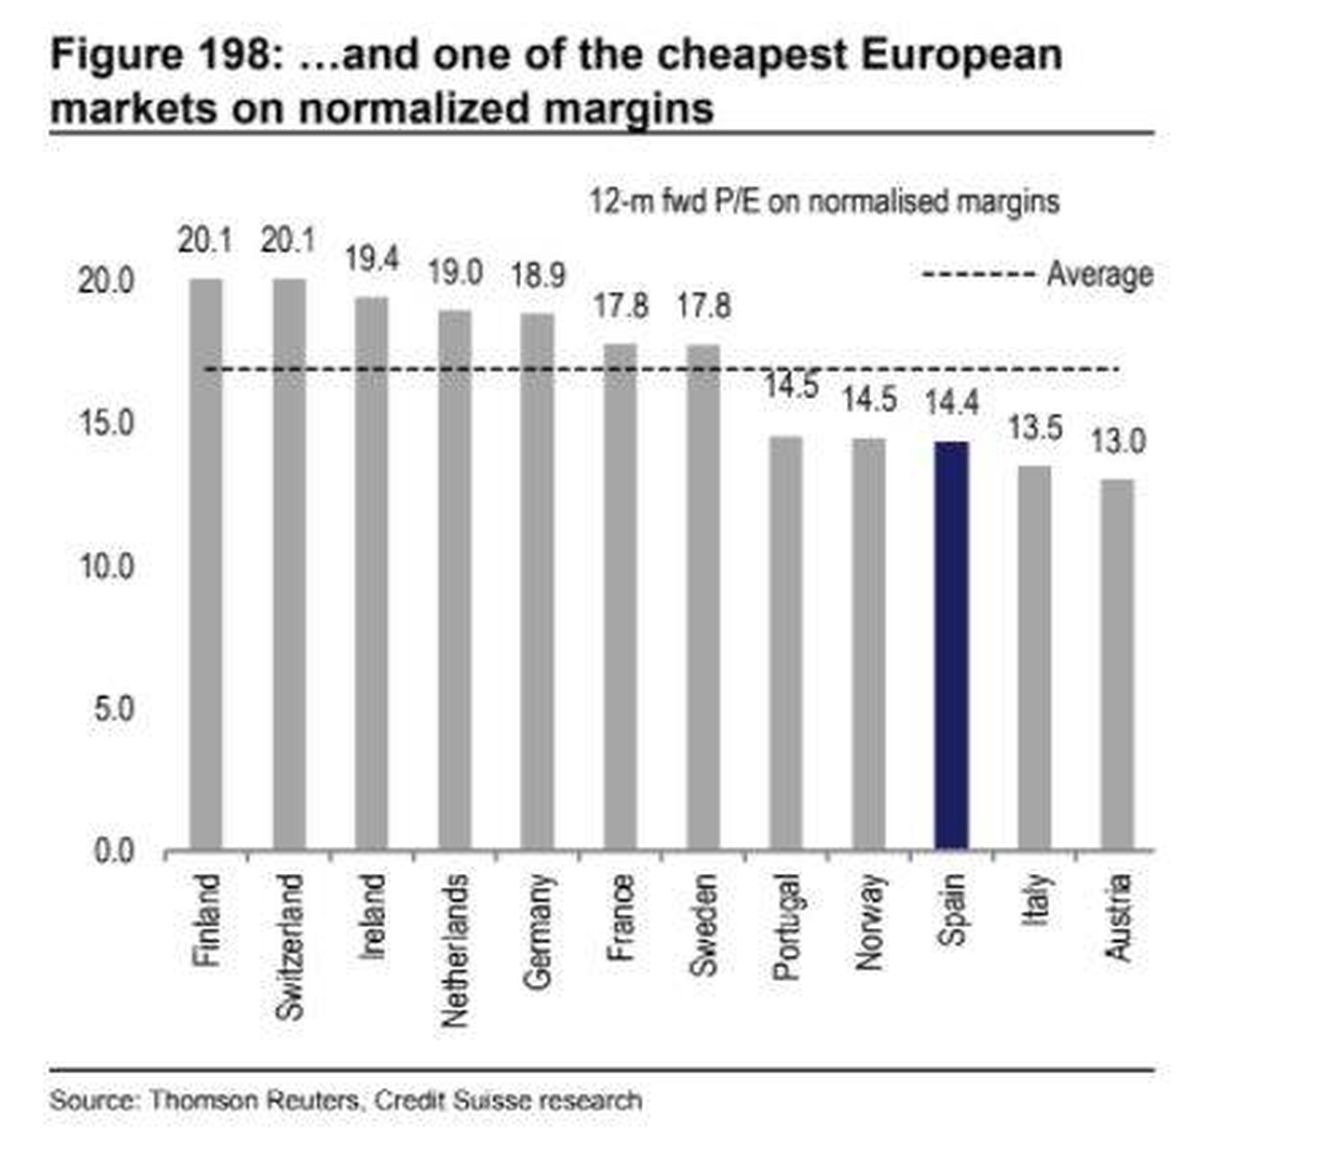 España, dentro de los mercados más baratos. (Credit Suisse)